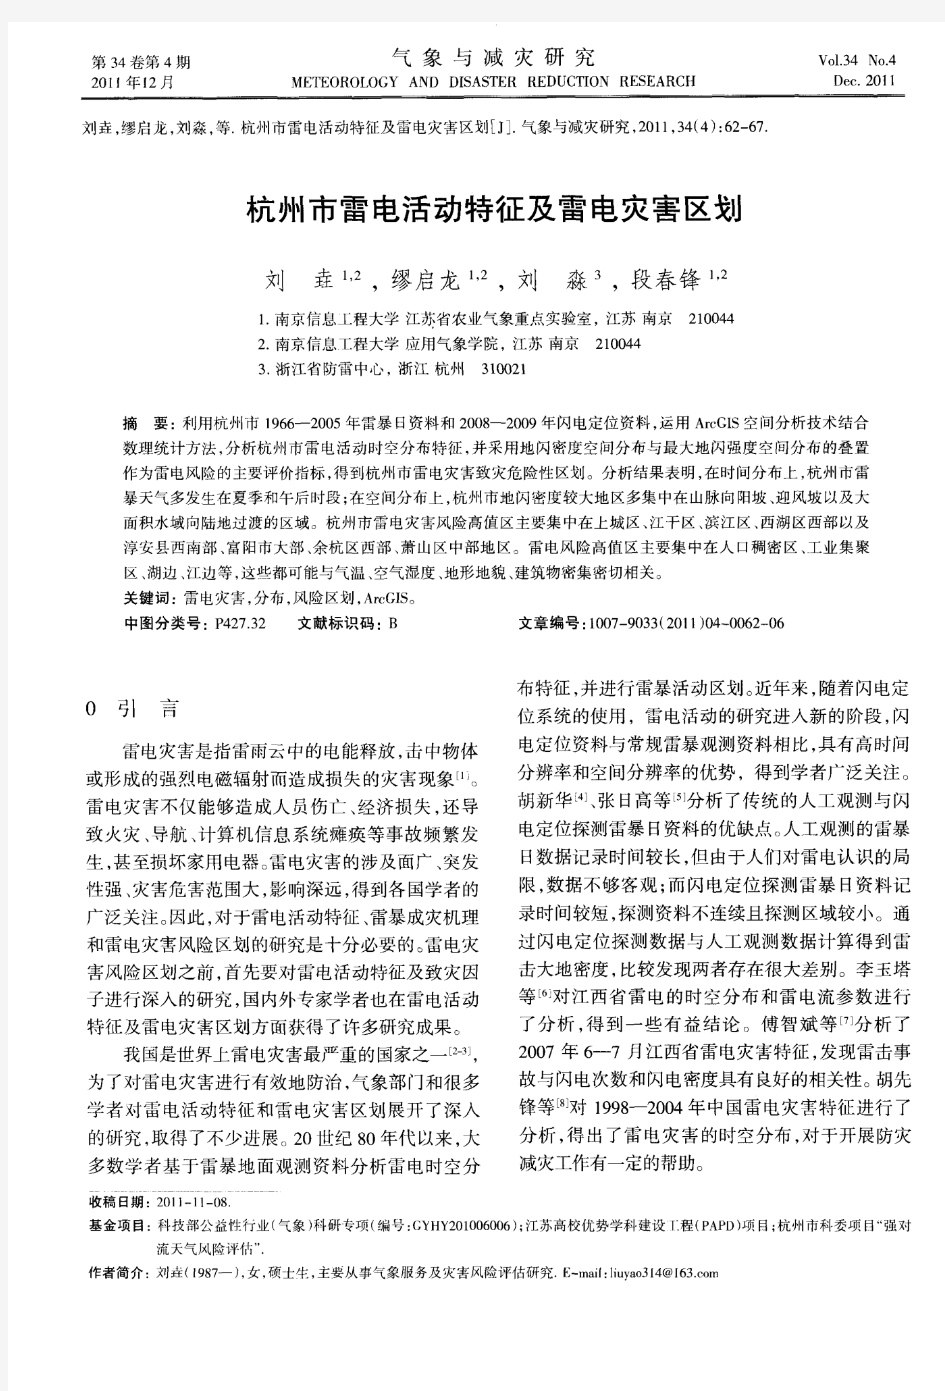 杭州市雷电活动特征及雷电灾害区划